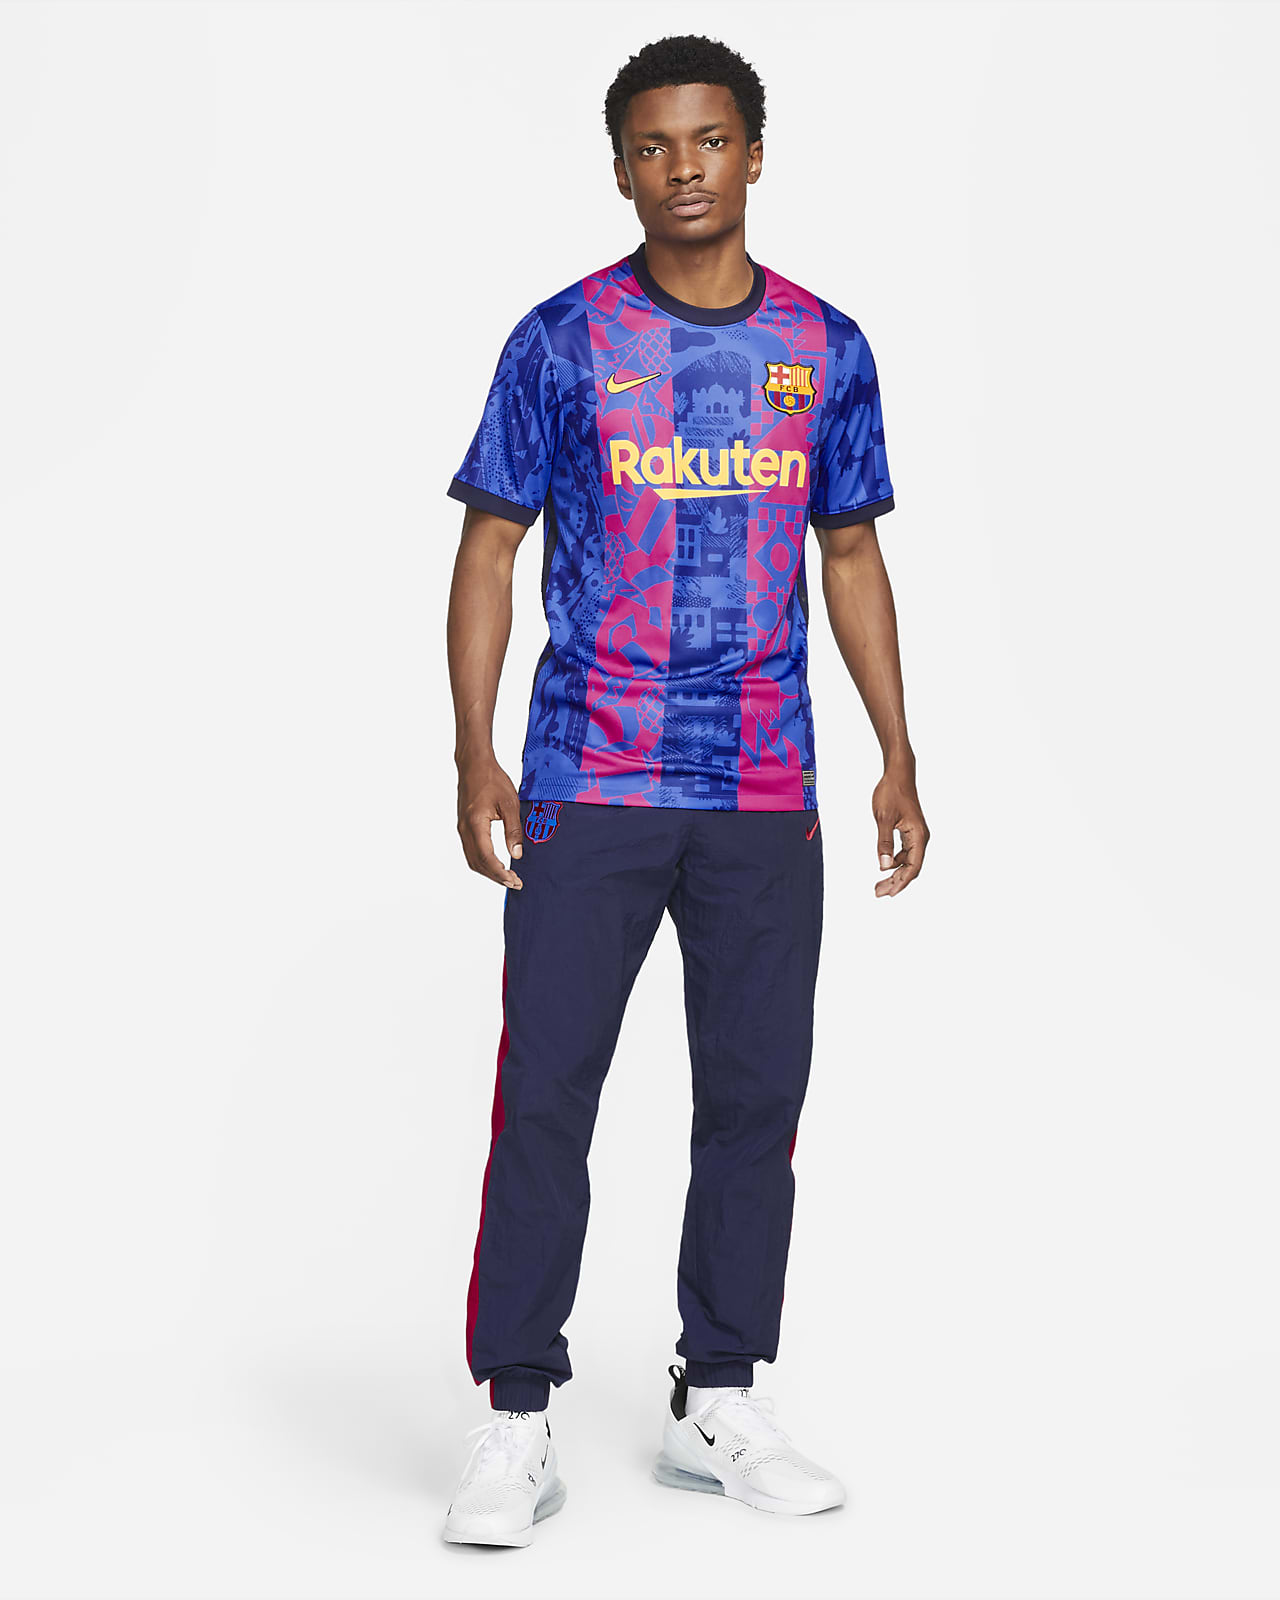 Zuigeling Reis Een hekel hebben aan F.C. Barcelona 2021/22 Stadium Third Men's Nike Dri-FIT Football Shirt. Nike  LU